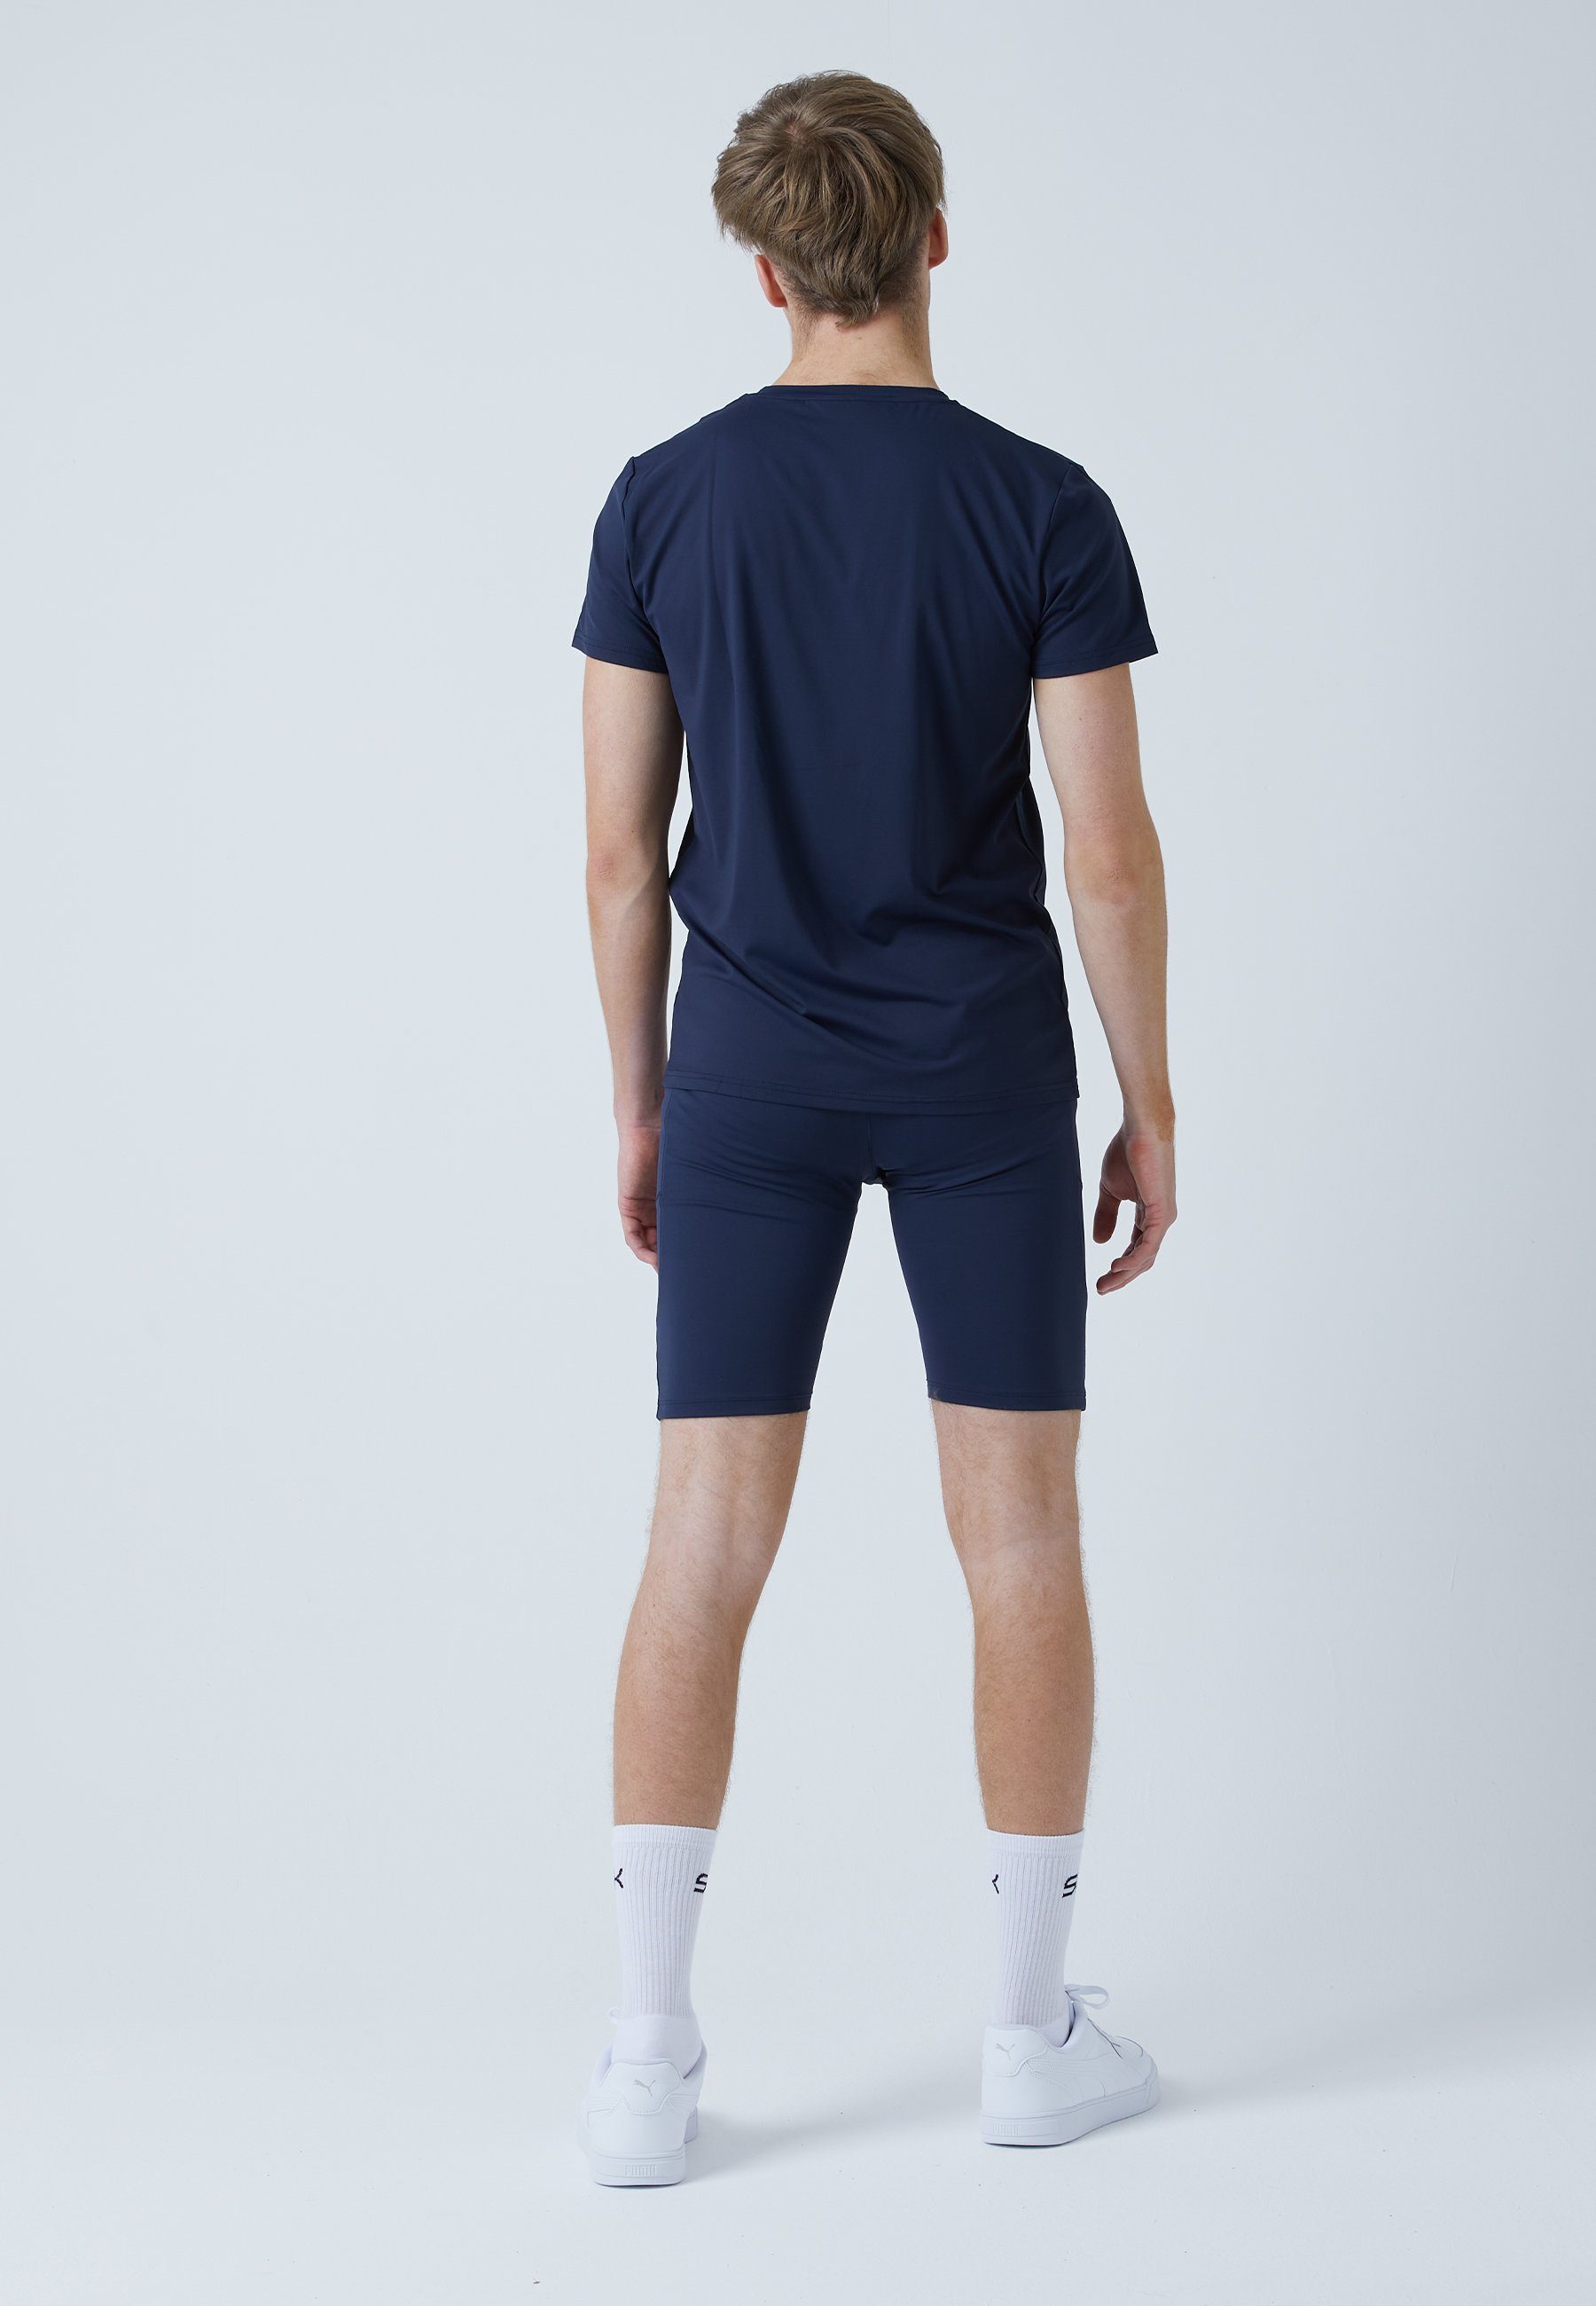 Herren Tights Short Jungen Radlerhose & navy Taschen mit Tennis blau SPORTKIND Funktionsshorts